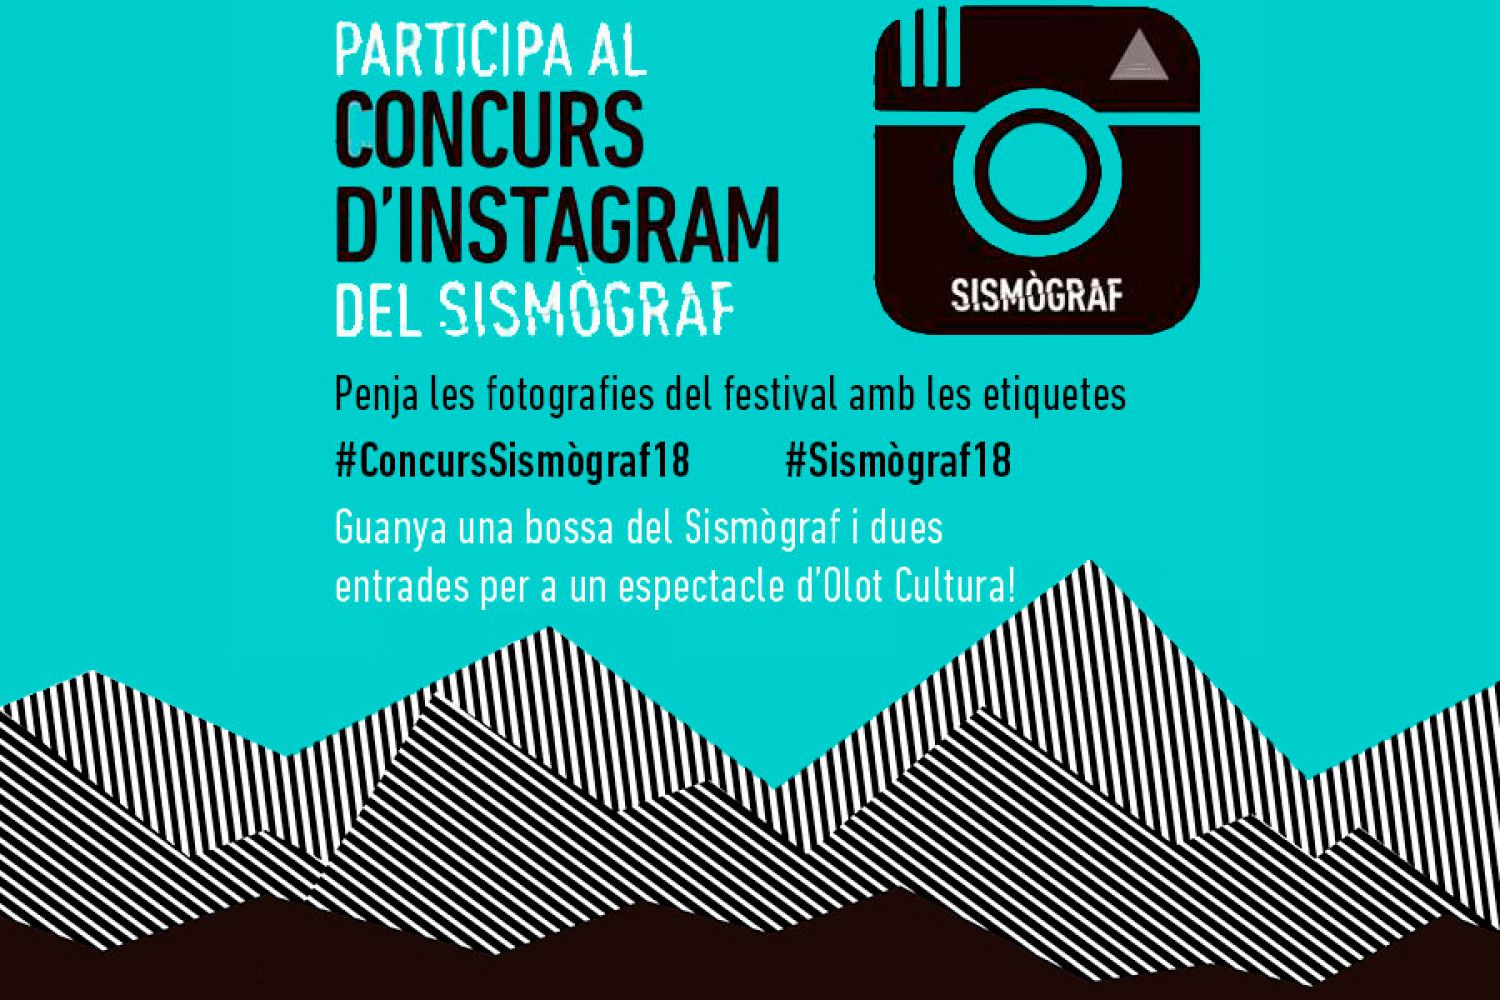 Participa al Concurs d'Instagram del Sismògraf 2018!